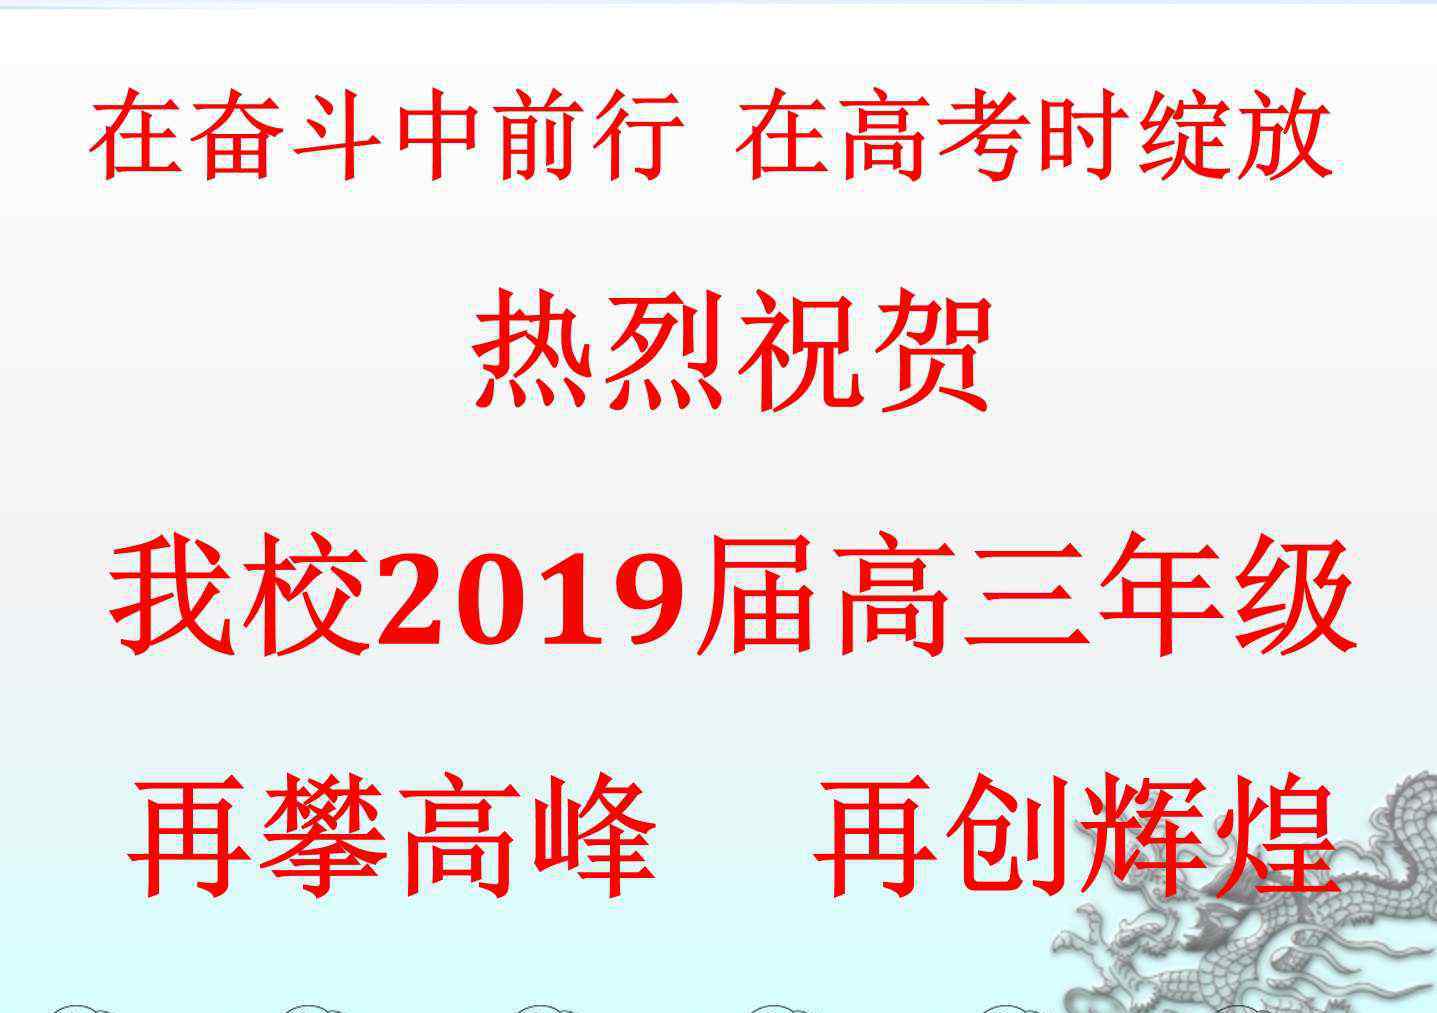 天津45中 天津市第四十五中学2019届高考，再创名校录取历史新高